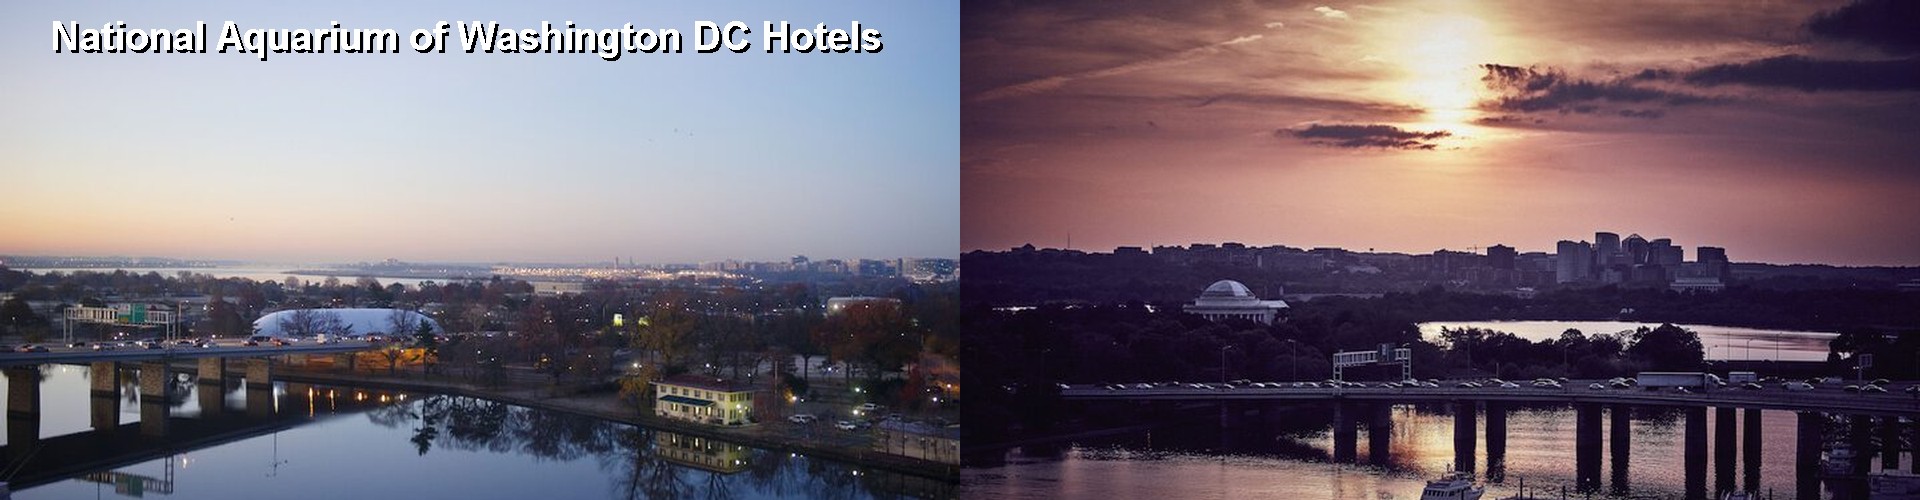 5 Best Hotels near National Aquarium of Washington DC